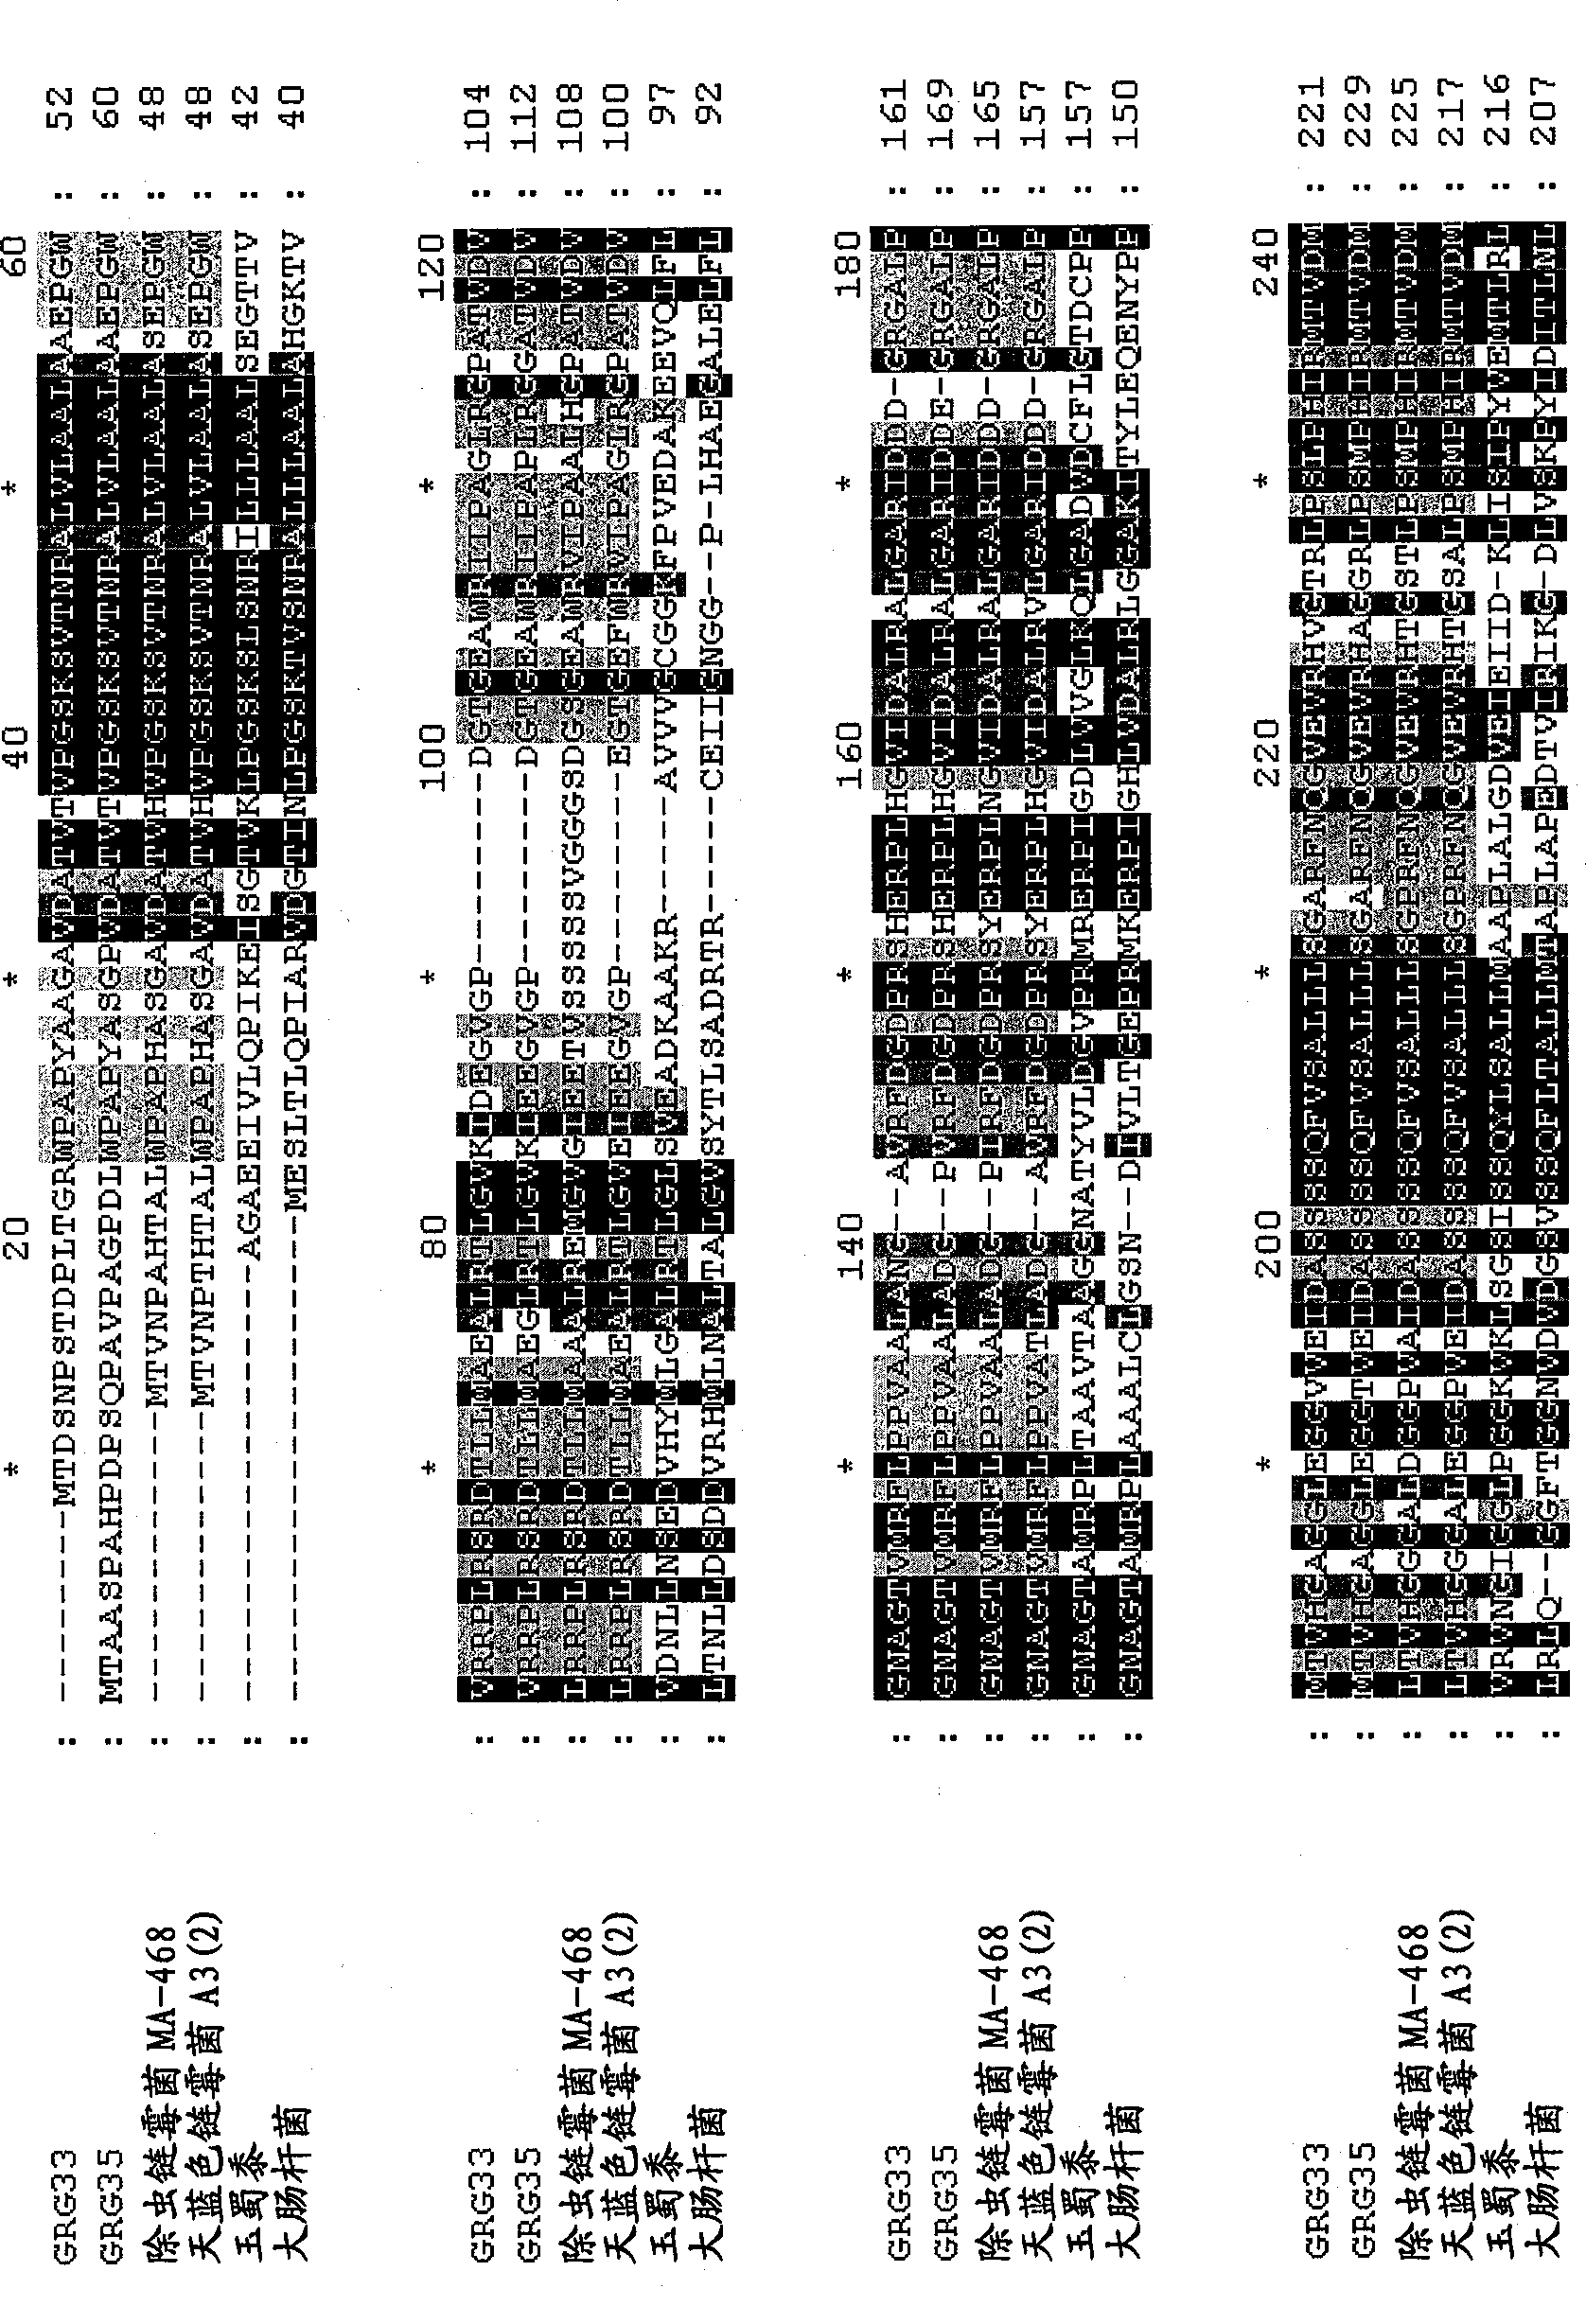 Grg33, grg35, grg36, grg37, grg38, grg39, and grg50: novel epsp synthase genes conferring herbicide resistance